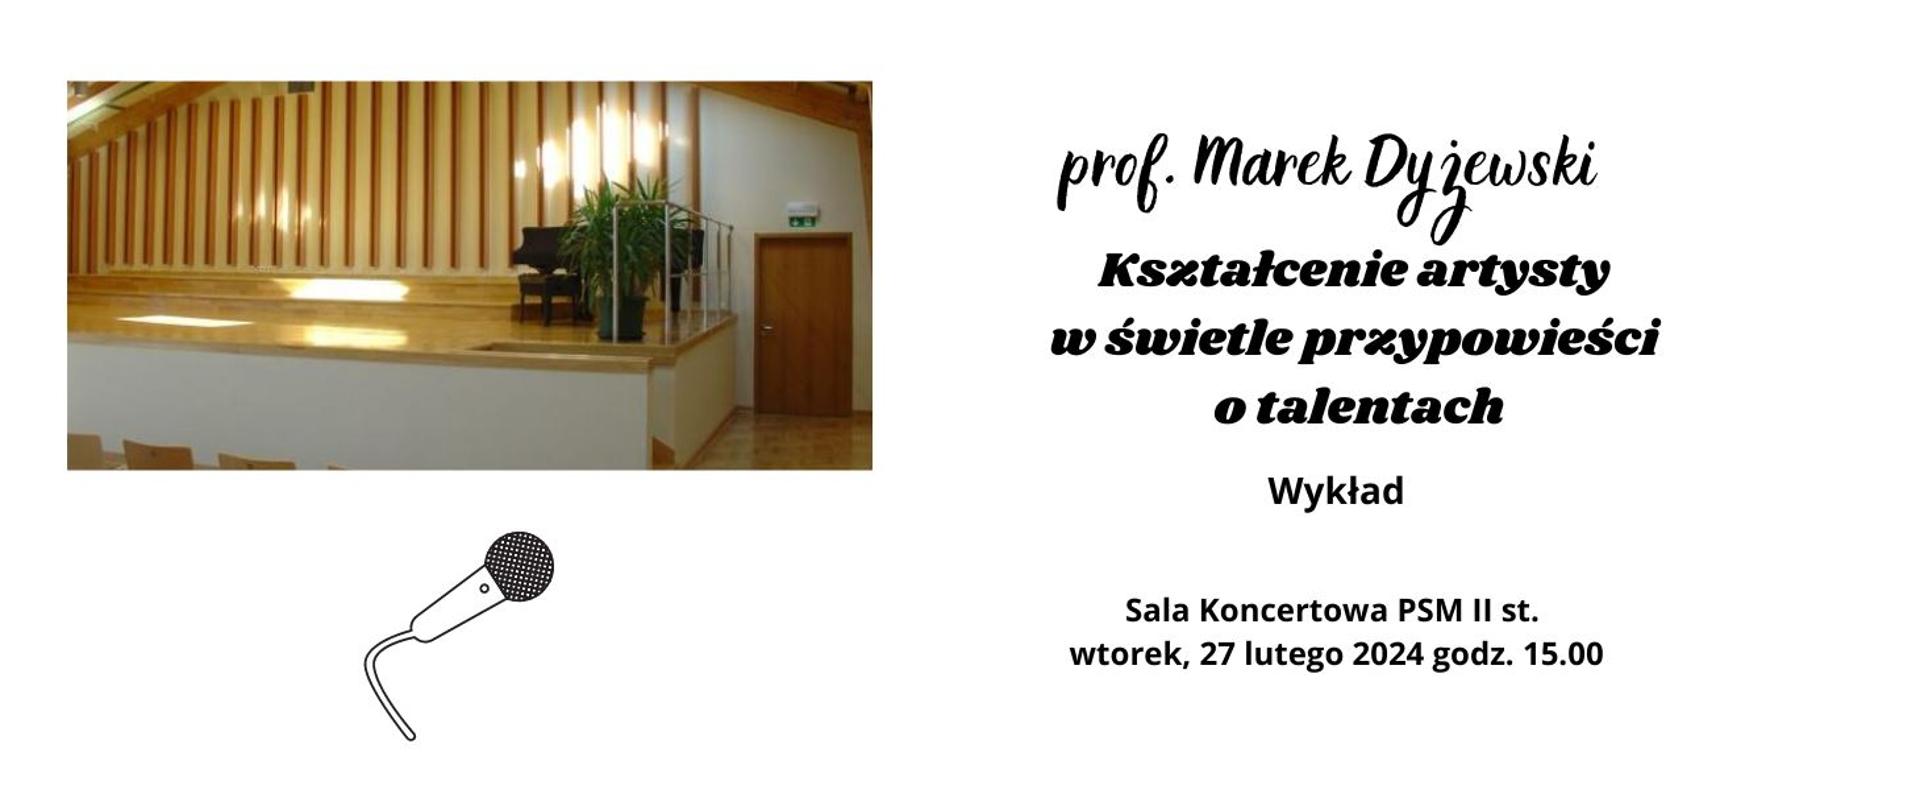 Wykład prof.Marek Dyżewski 27.02.2024 godz.15.00 biały plakat ze zdjęciem sali koncertowej.